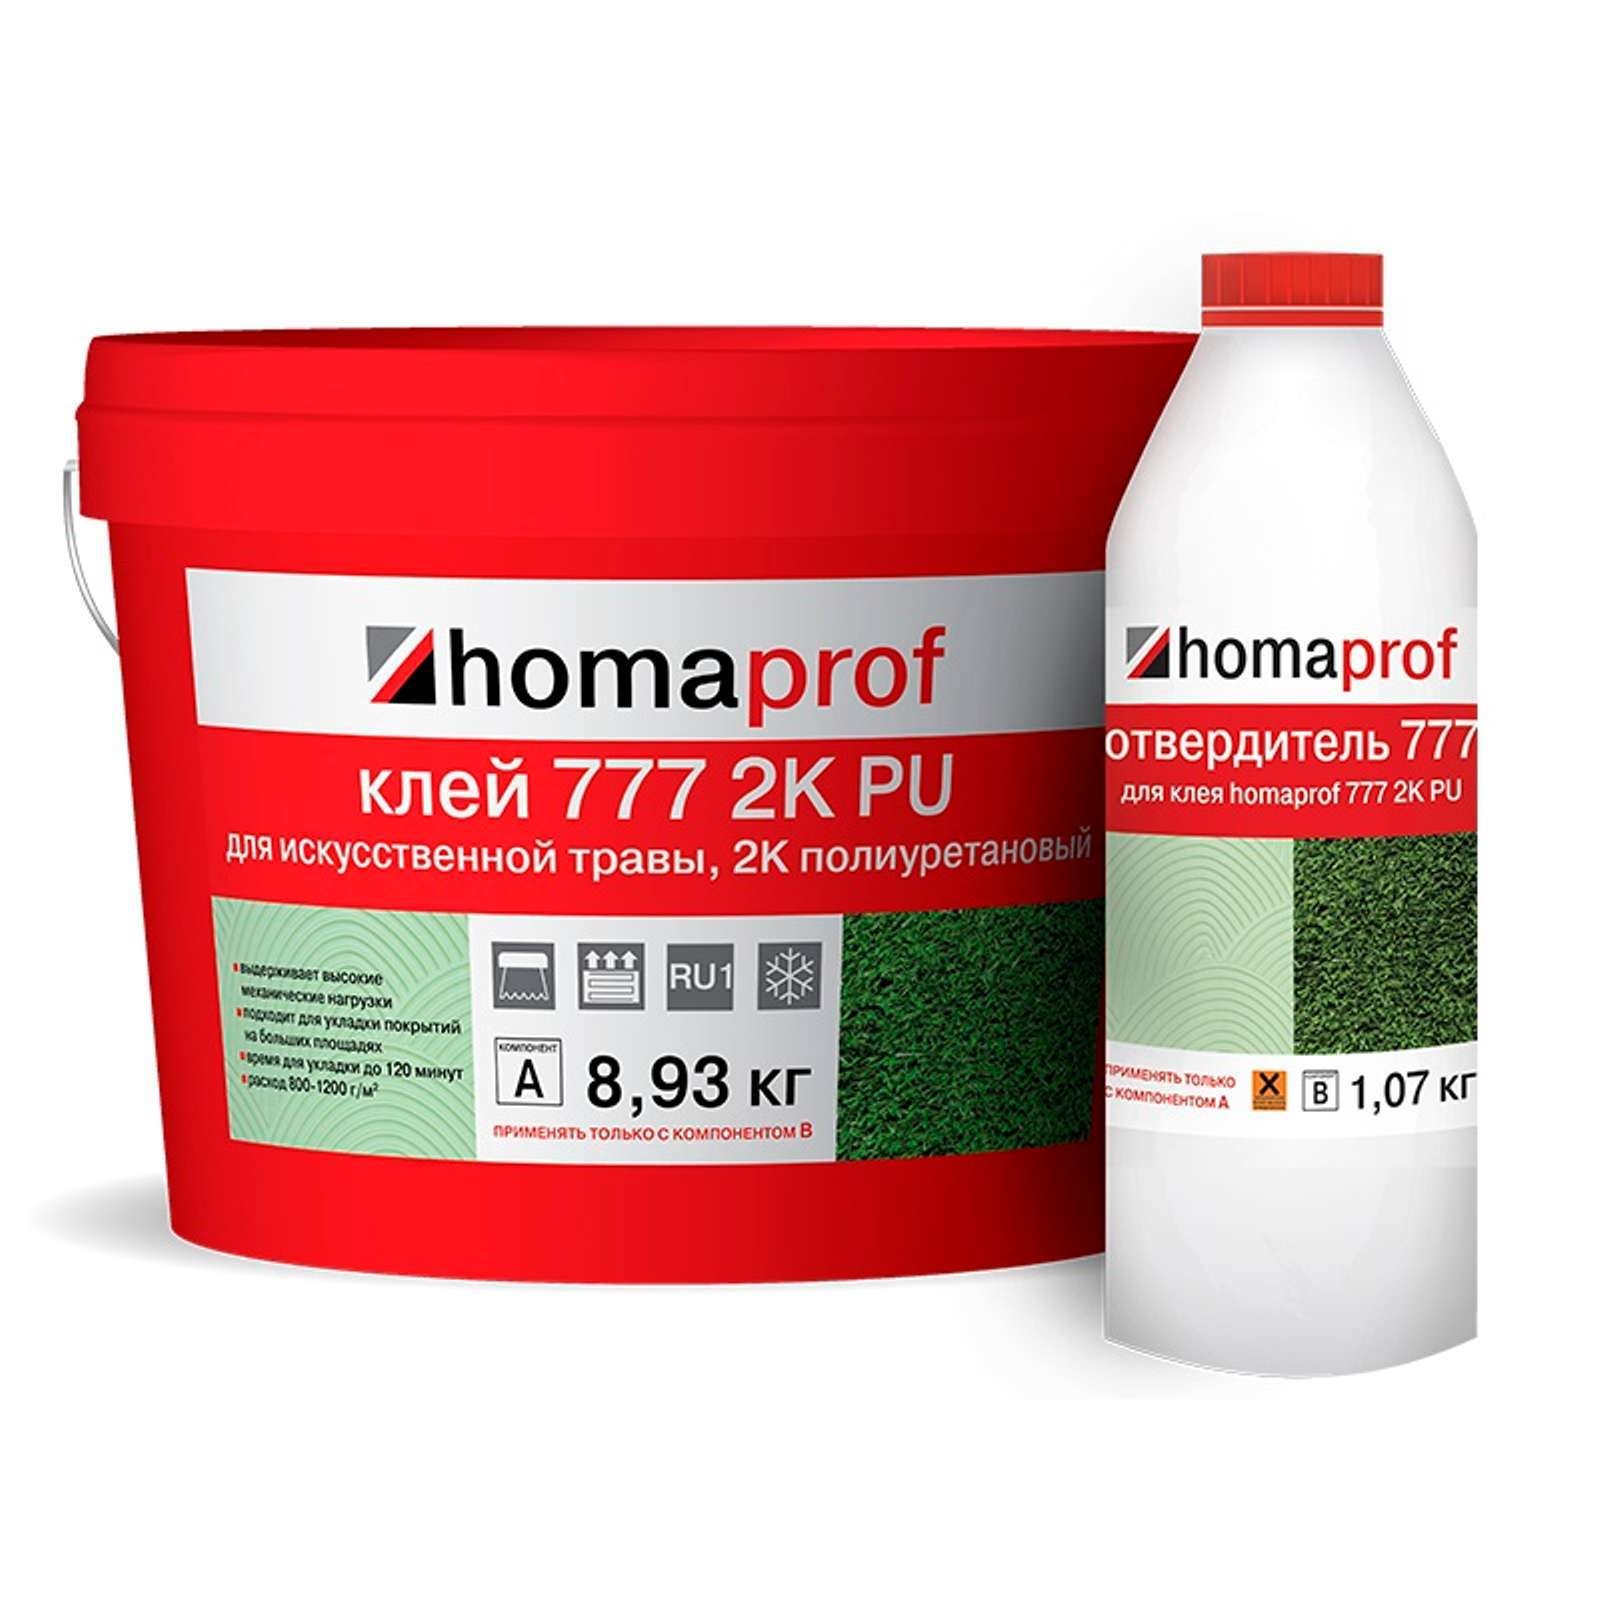 Клей для искусственной травы Homaprof 777 2K PU, 10 кг